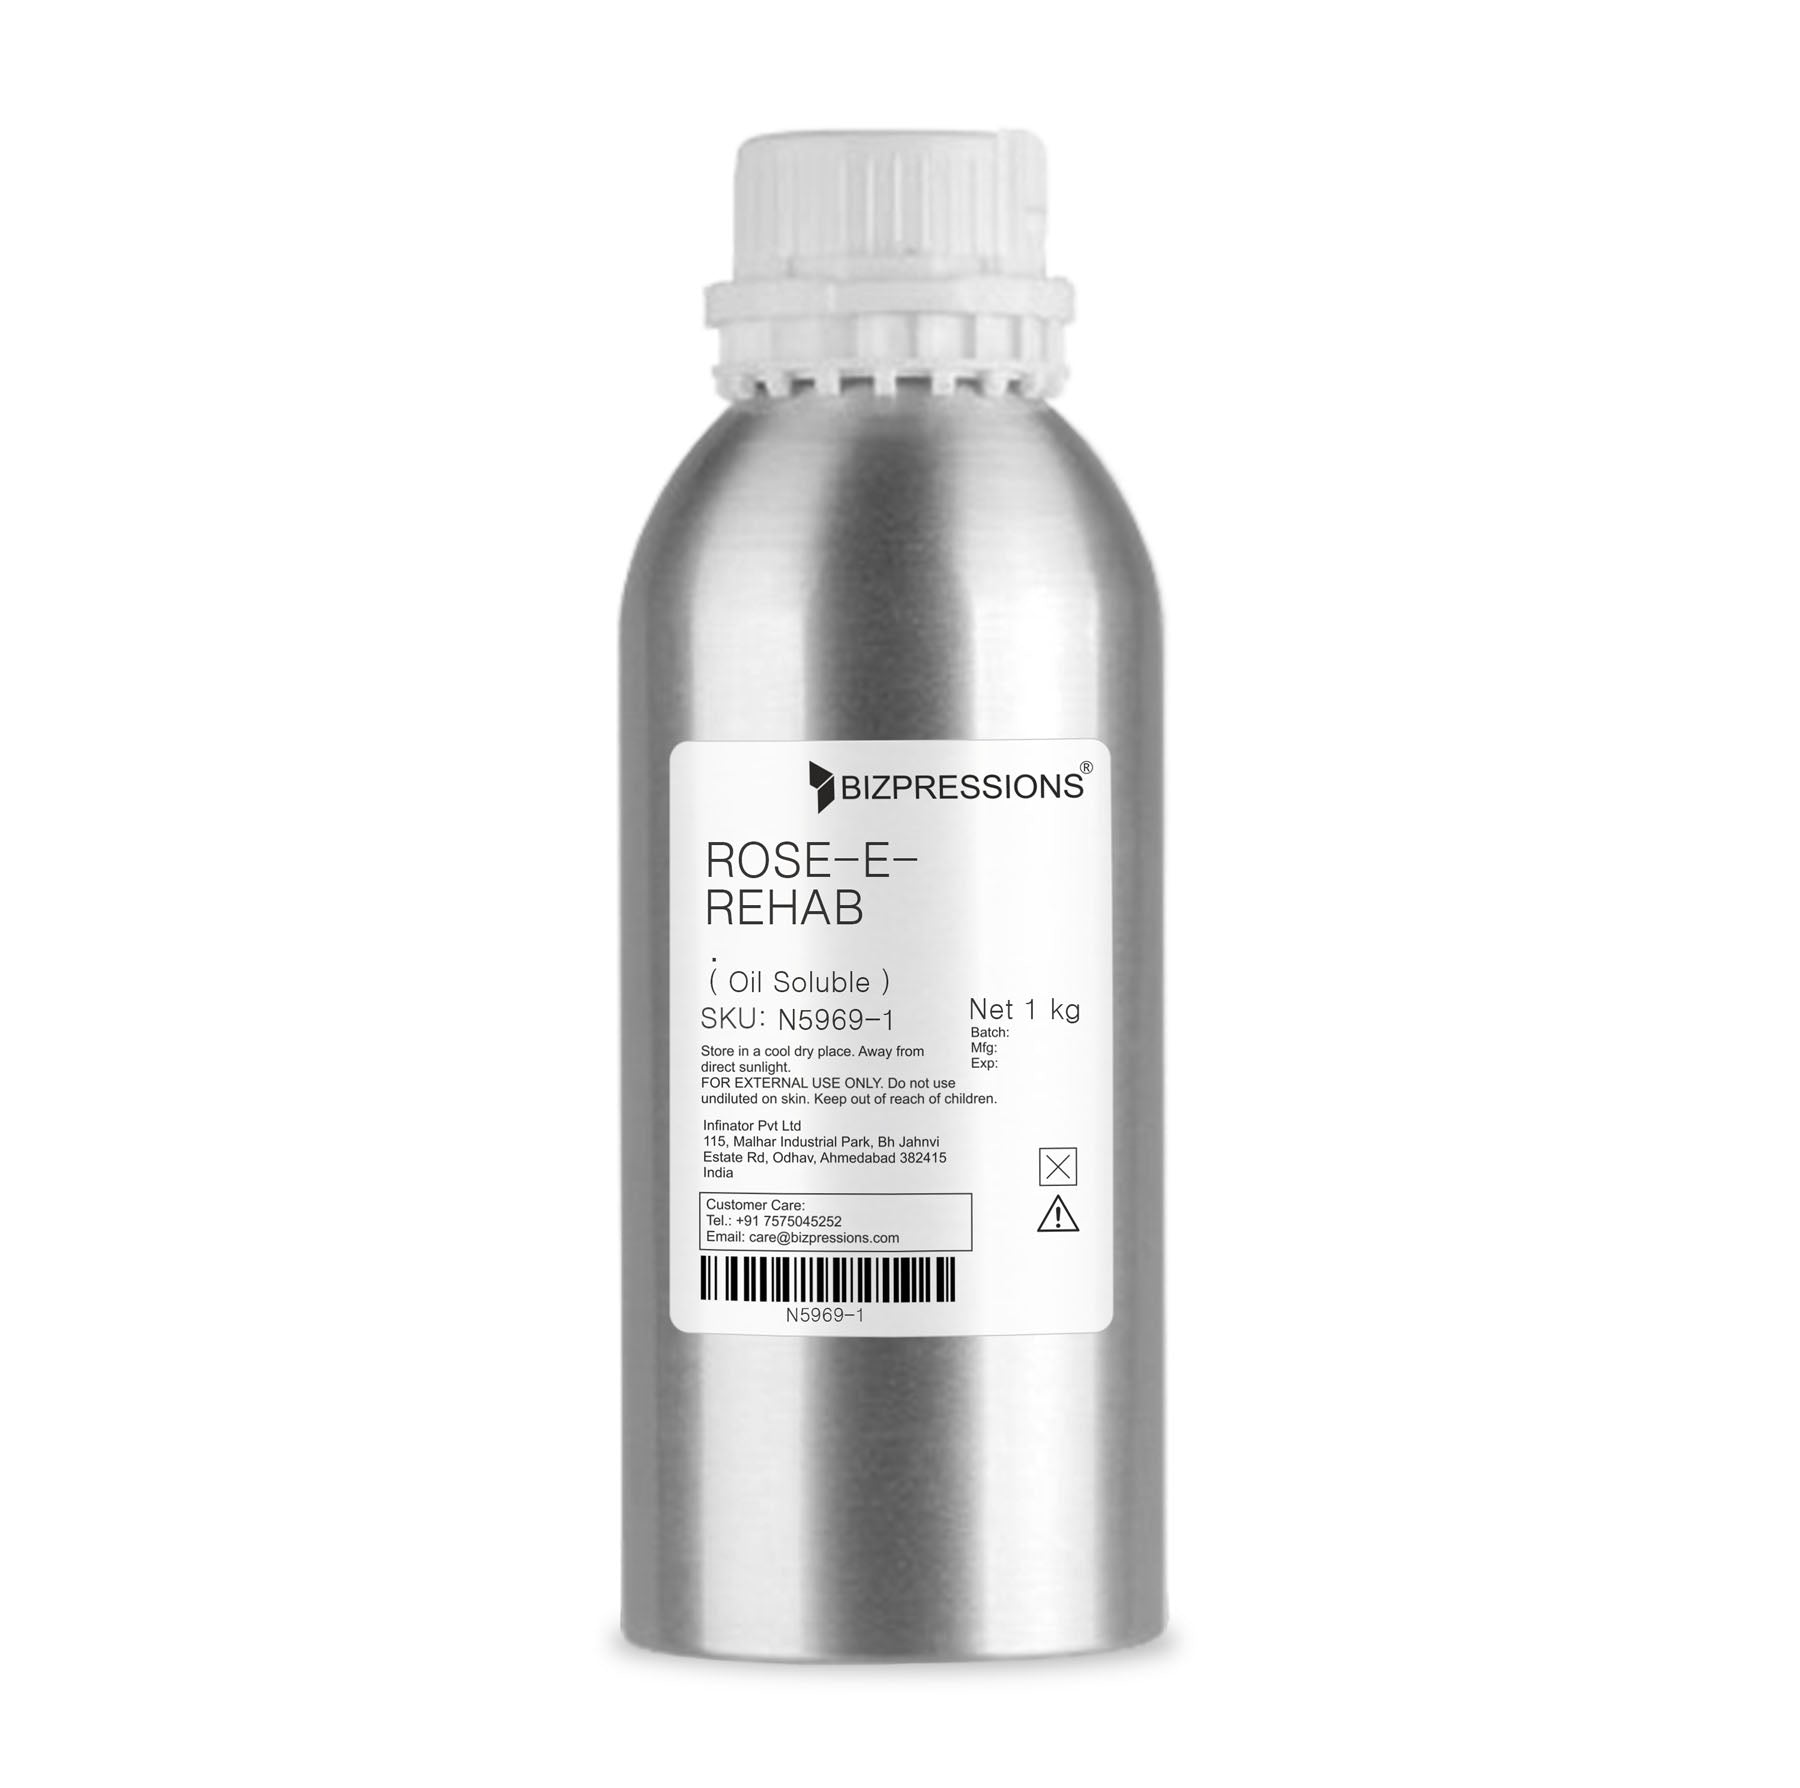 ROSE-E-REHAB - Fragrance ( Oil Soluble ) - 1 kg